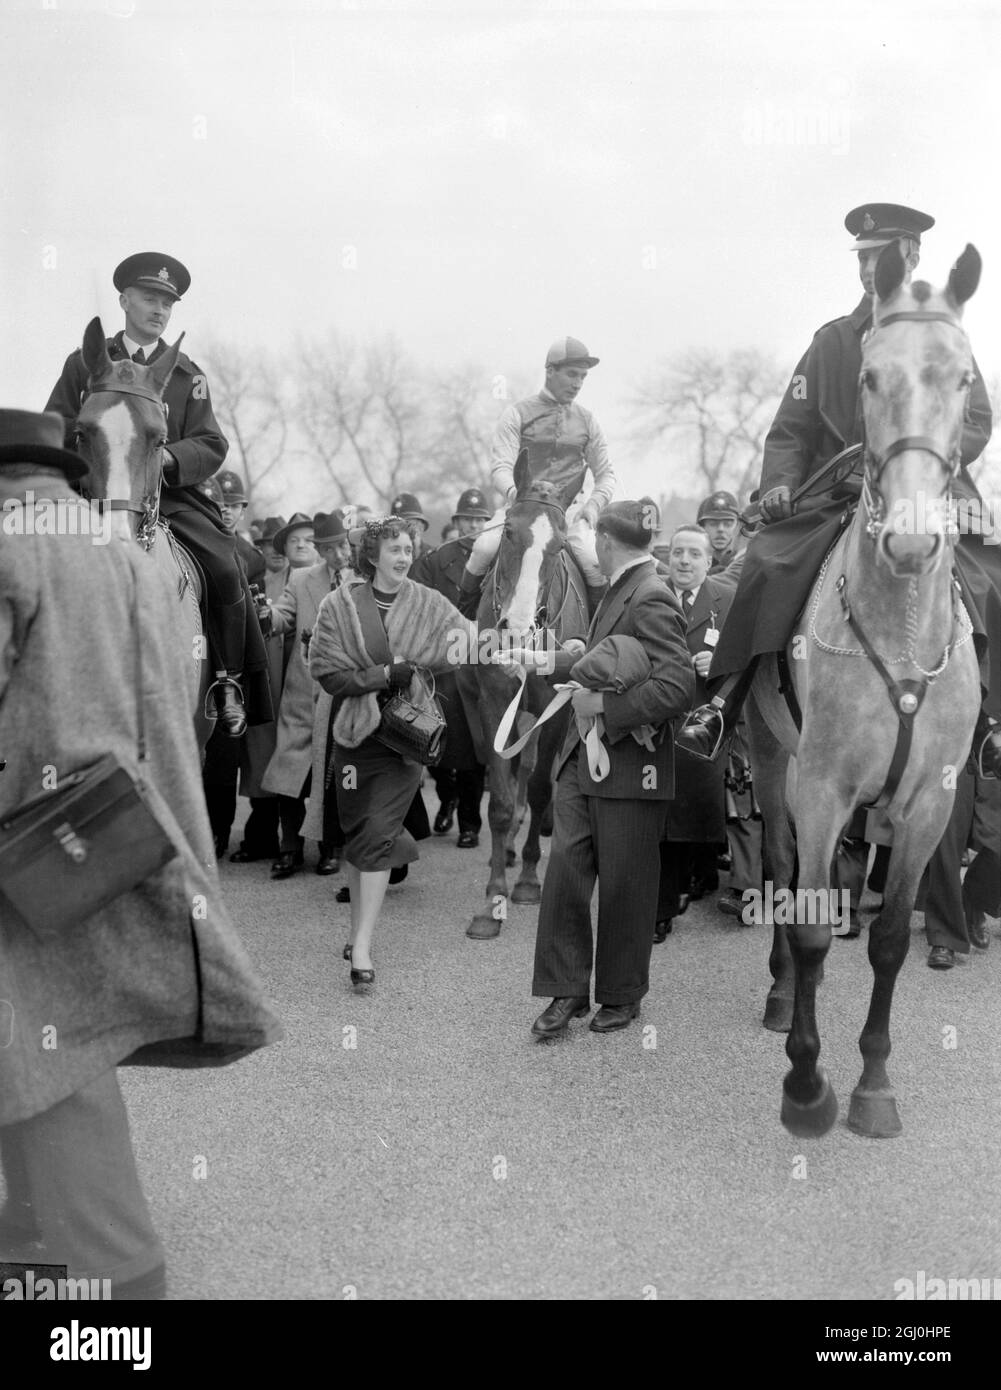 Royal Tan gewann den Grand National bei einem Aintree in Liverpool heute mit einem Hals von Tudor Line, mit irischen Eidechsen an dritter Stelle. Fünf Pferde beendeten das zermürbende viereinhalb Meilen Rennen, aus einem Feld von 29. Bryan Marshall, der heute Royal Tan zum Sieg ritt, ist ein stolzer Mann, als er und sein Vorwurf in das Gehäuse geführt werden. März 1954 Stockfoto